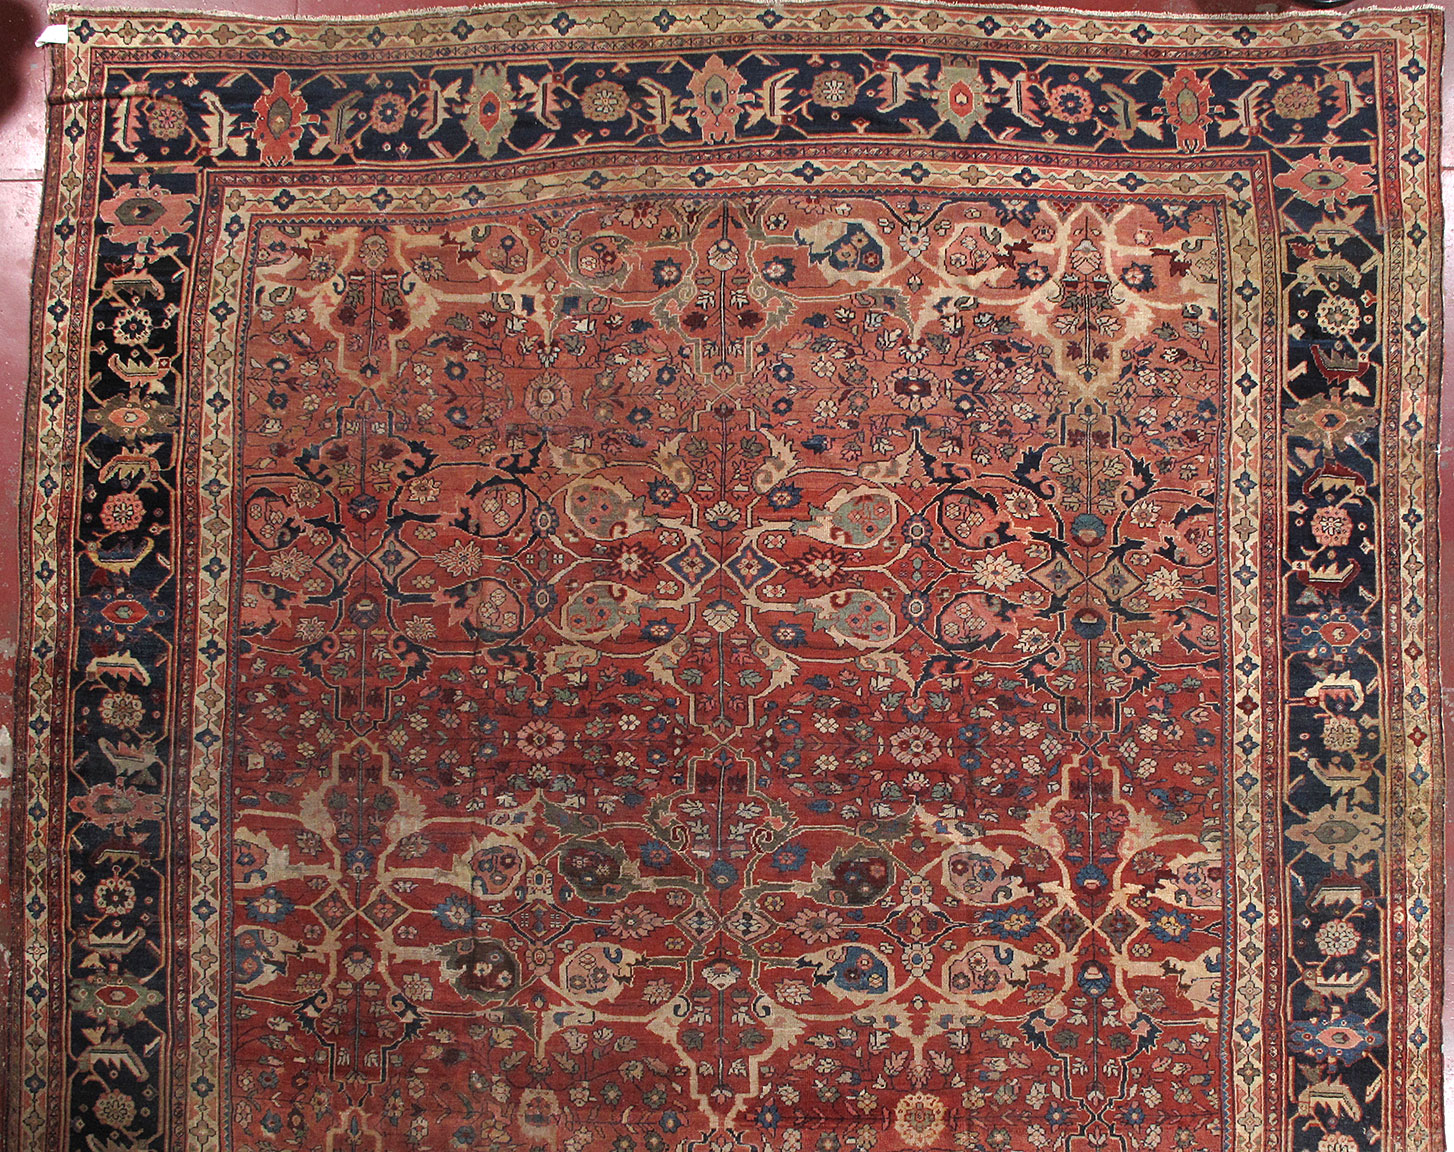 Antique mahal Carpet - # 53219